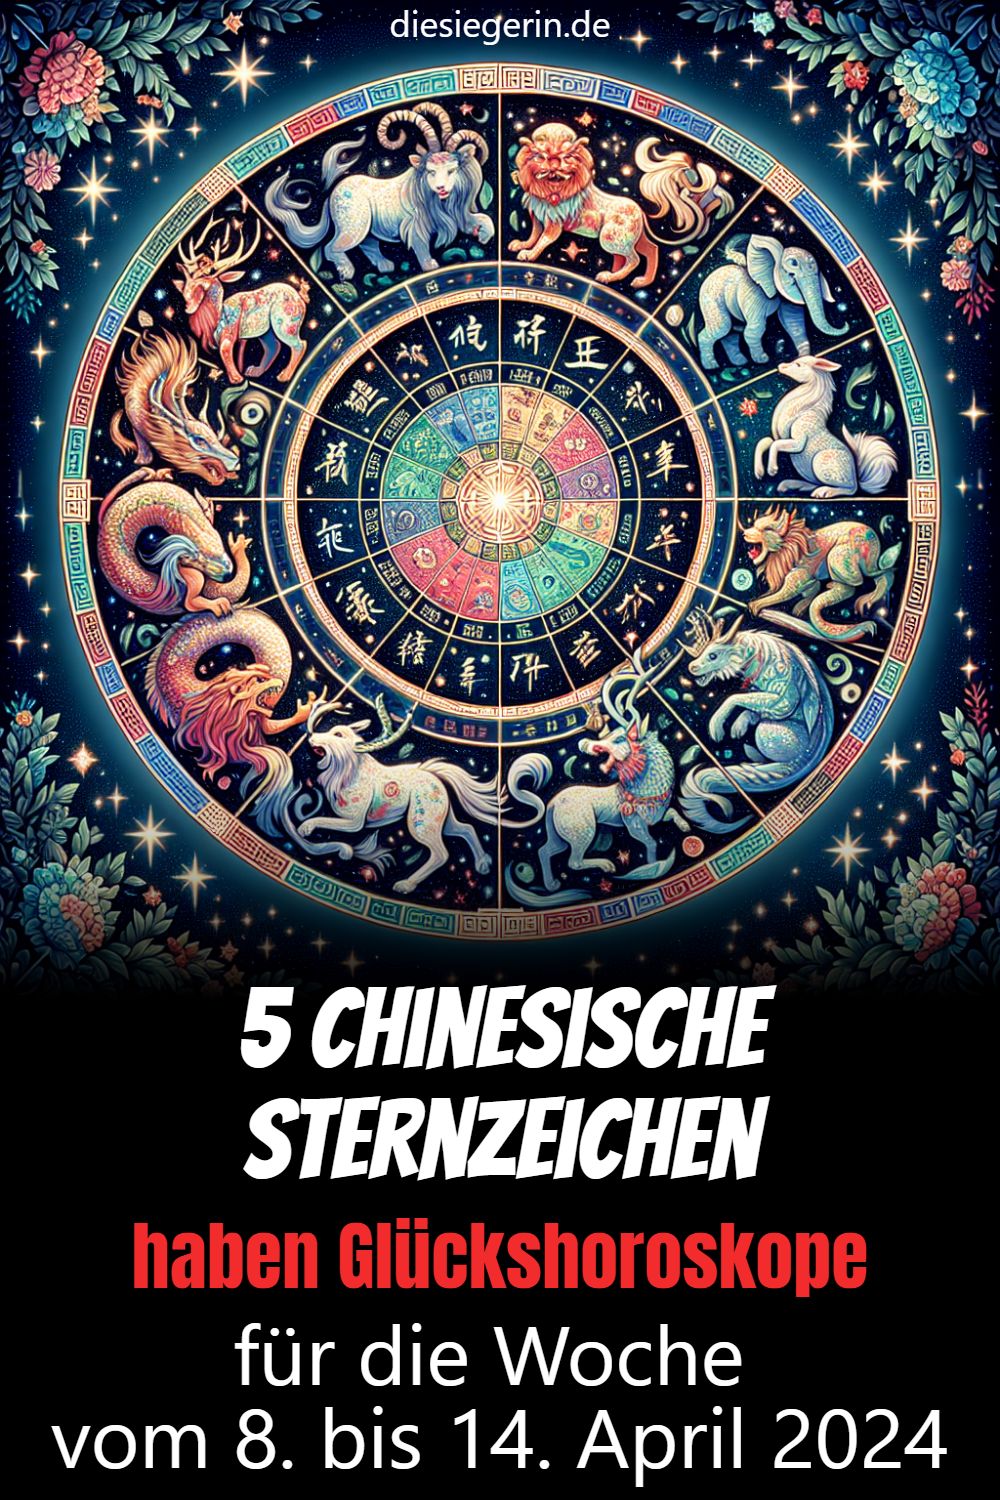 5 Chinesische Sternzeichen haben Glückshoroskope für die Woche vom 8. bis 14. April 2024